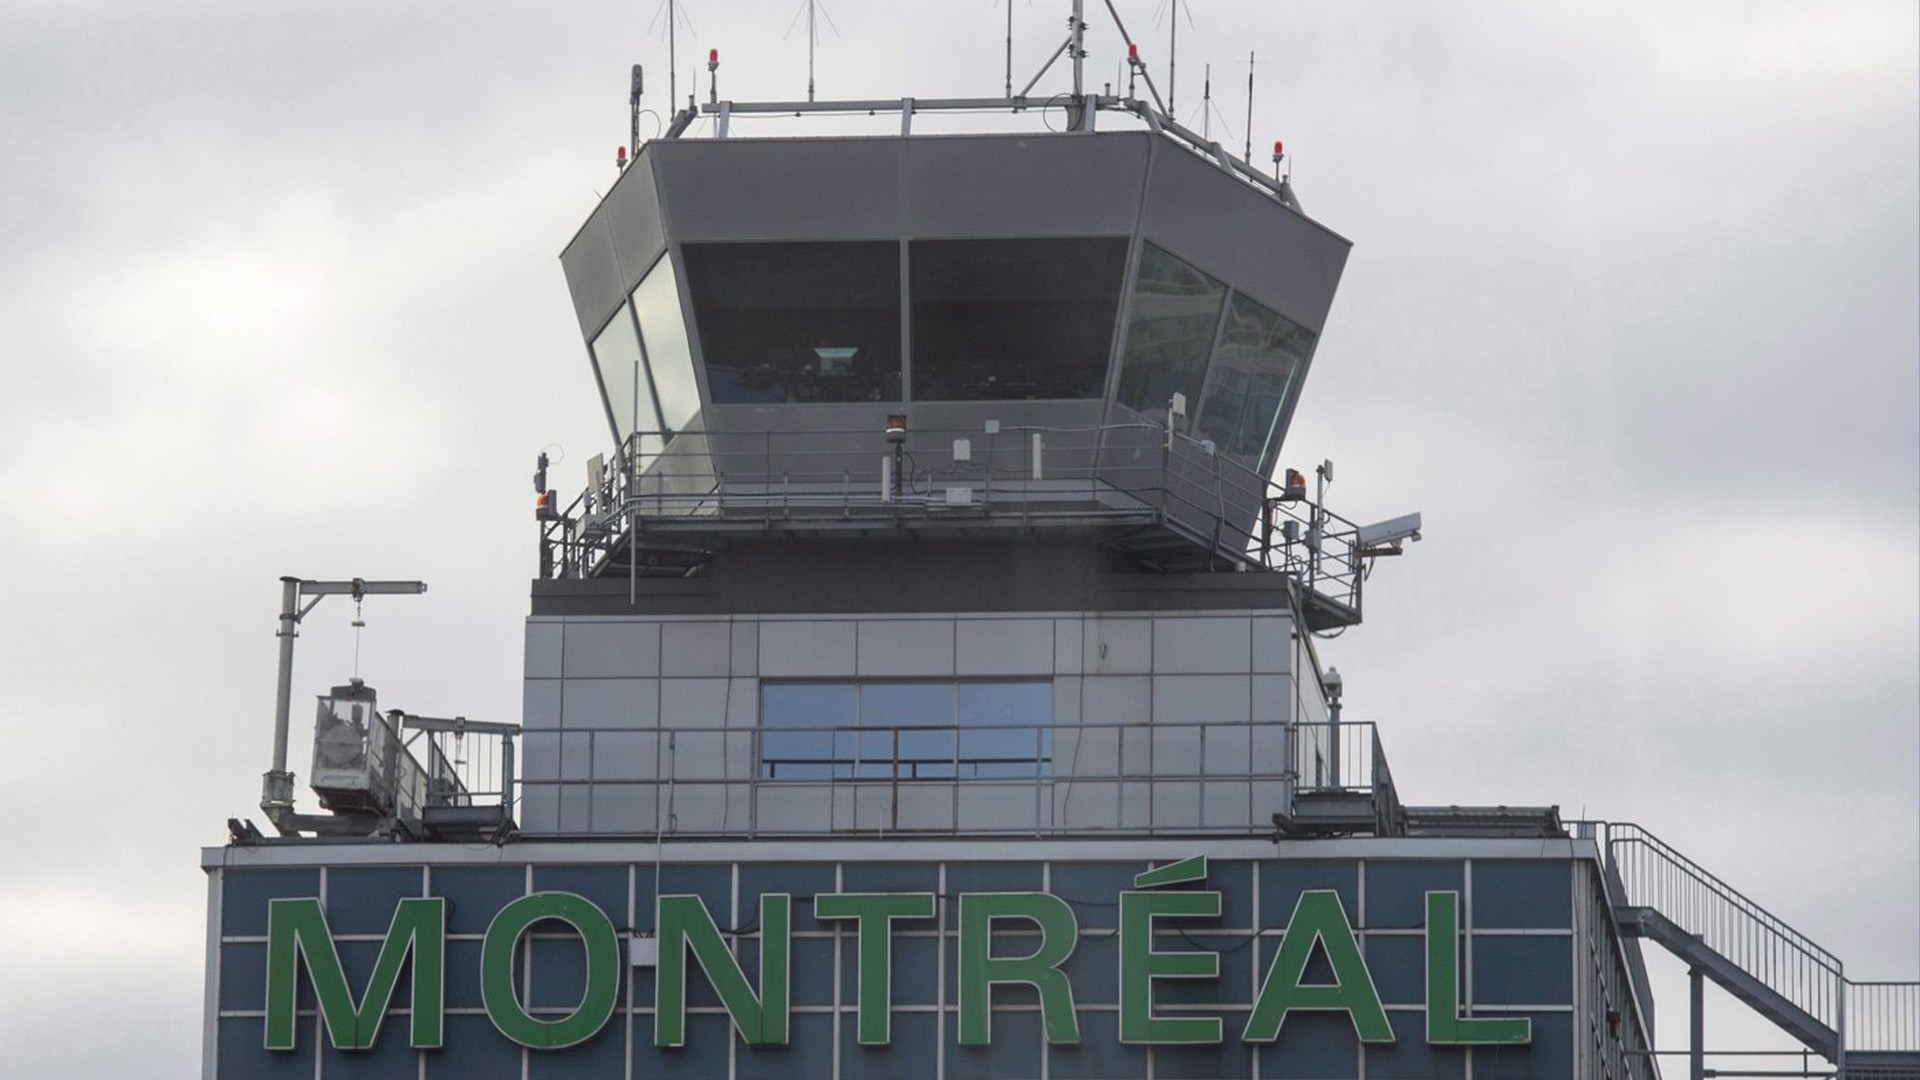 La tour de contrôle de l'aéroport Trudeau est vue, le mardi 8 décembre 2015 à Montréal. L'aéroport de Montréal connaît un problème de taxis illégaux, indique son autorité de régulation, qui appelle à une répression sur la question.